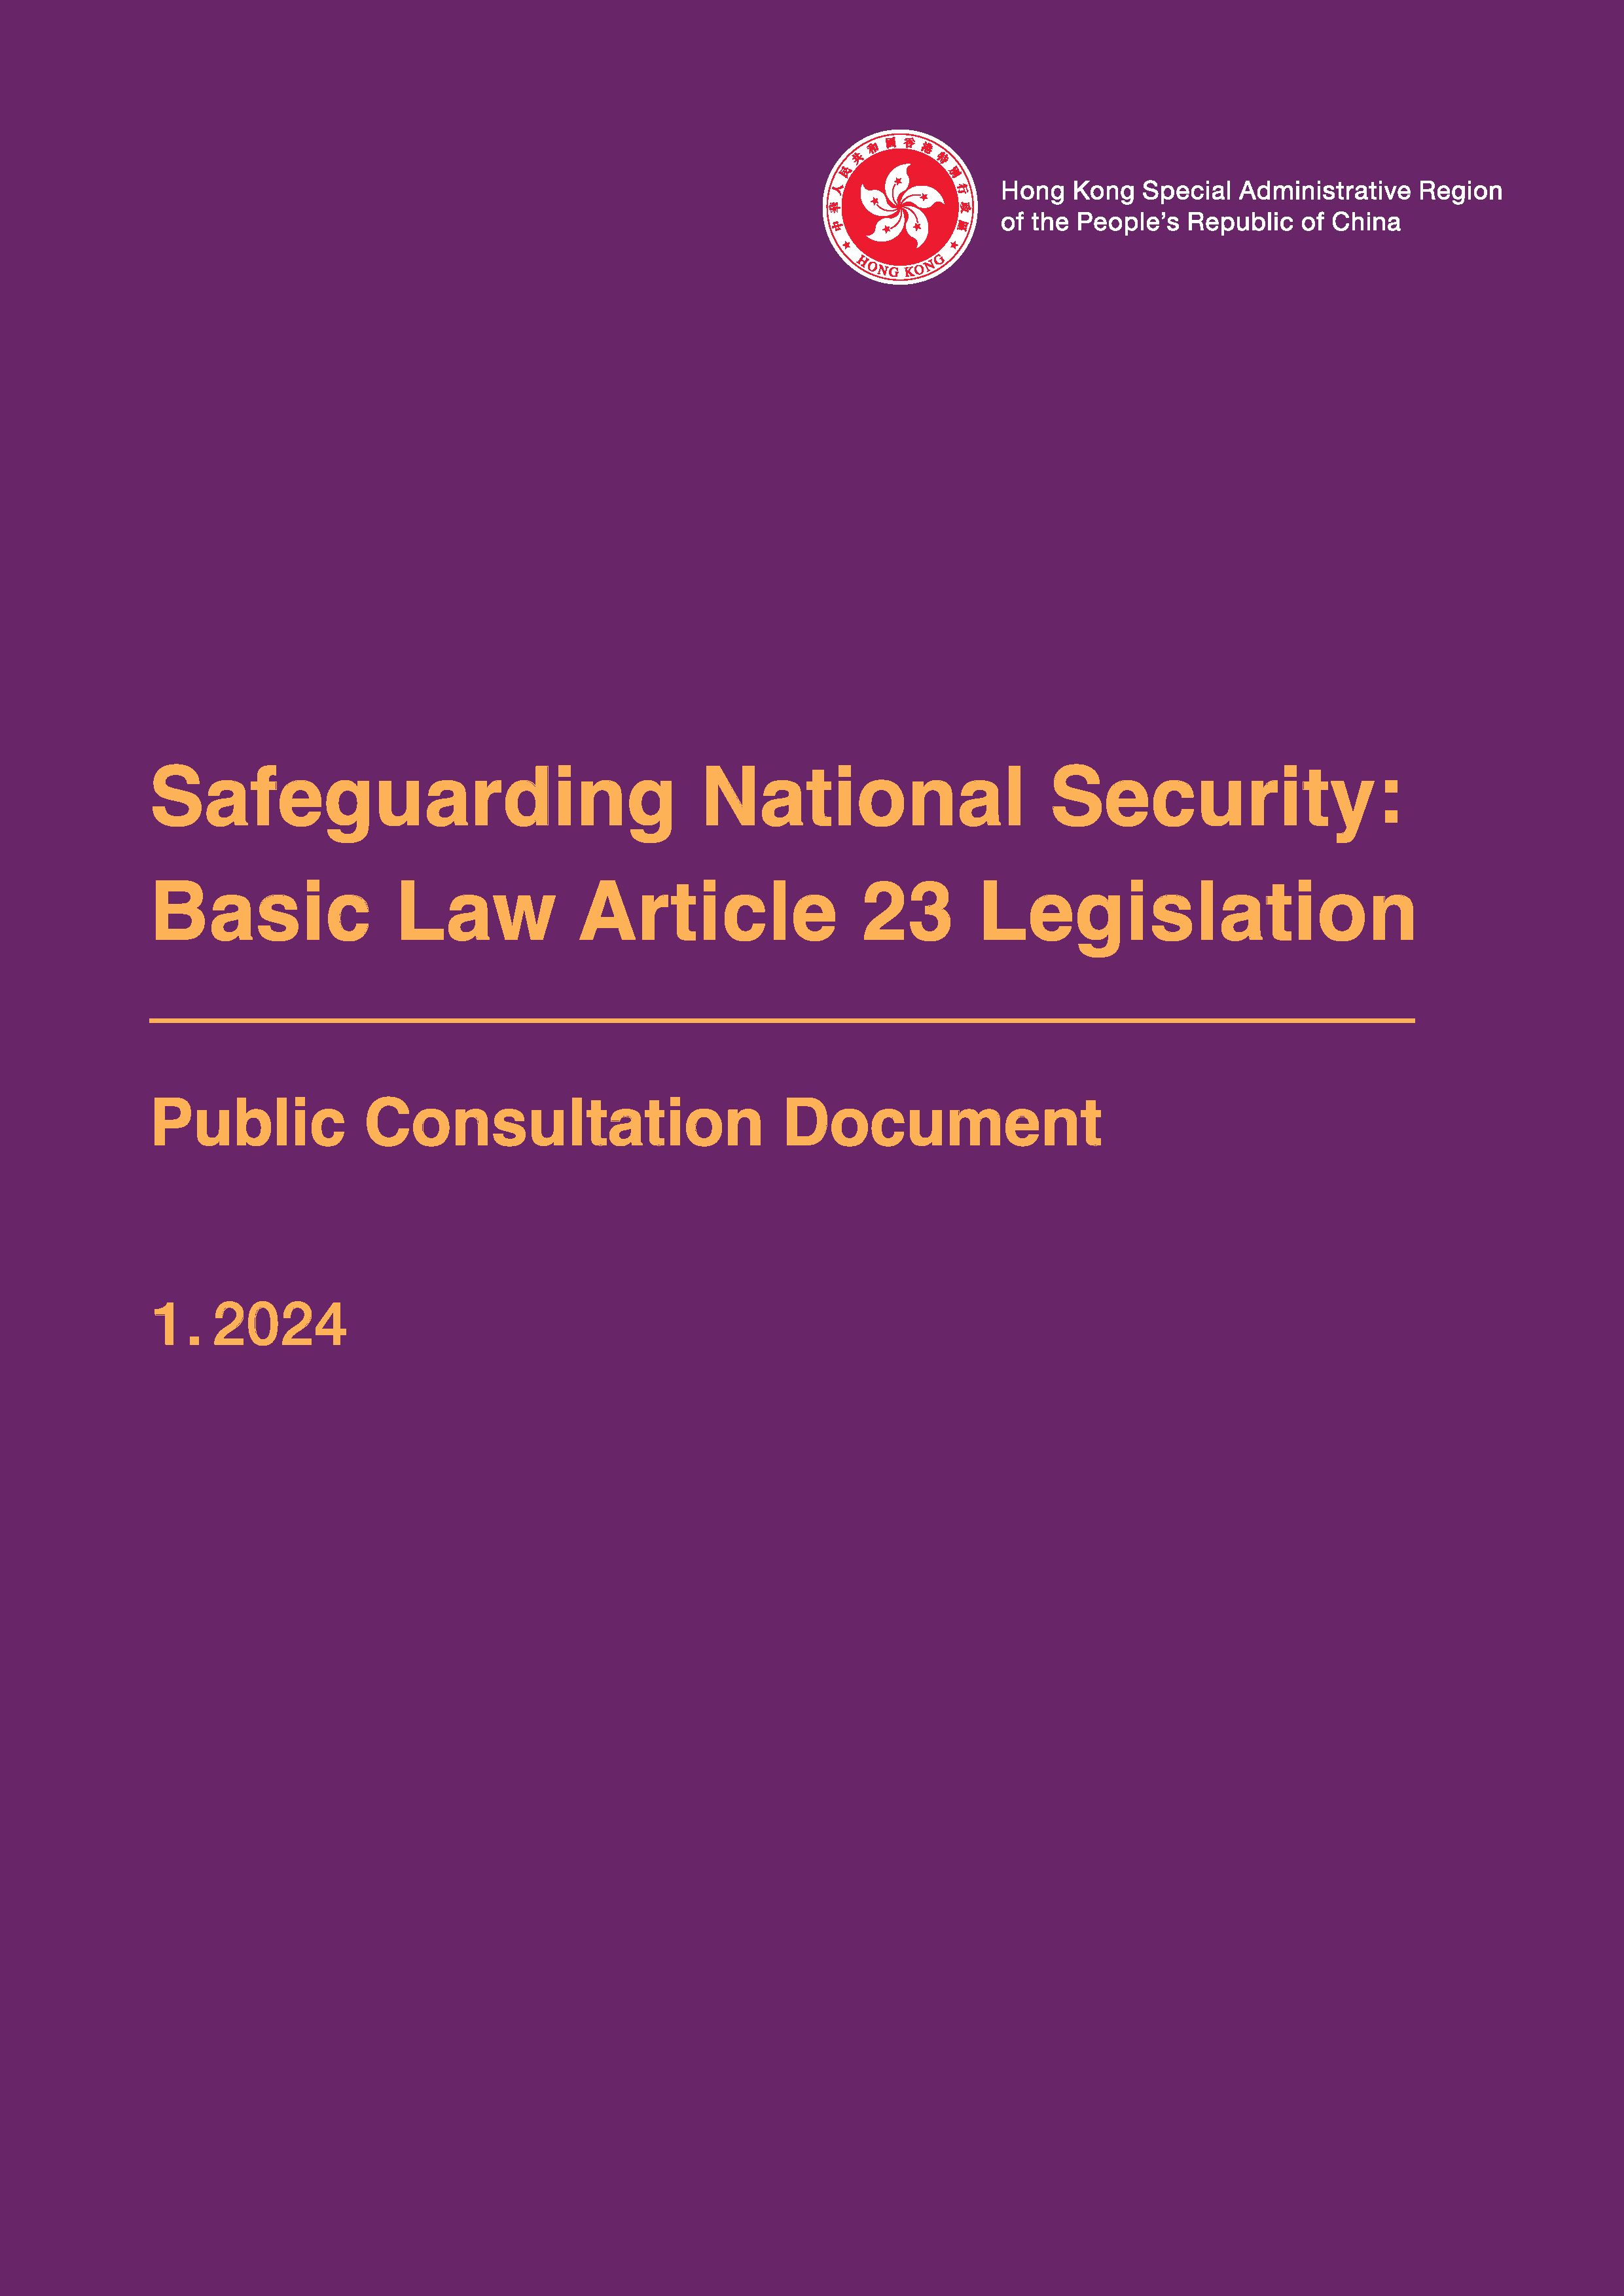  Public Consultation Document